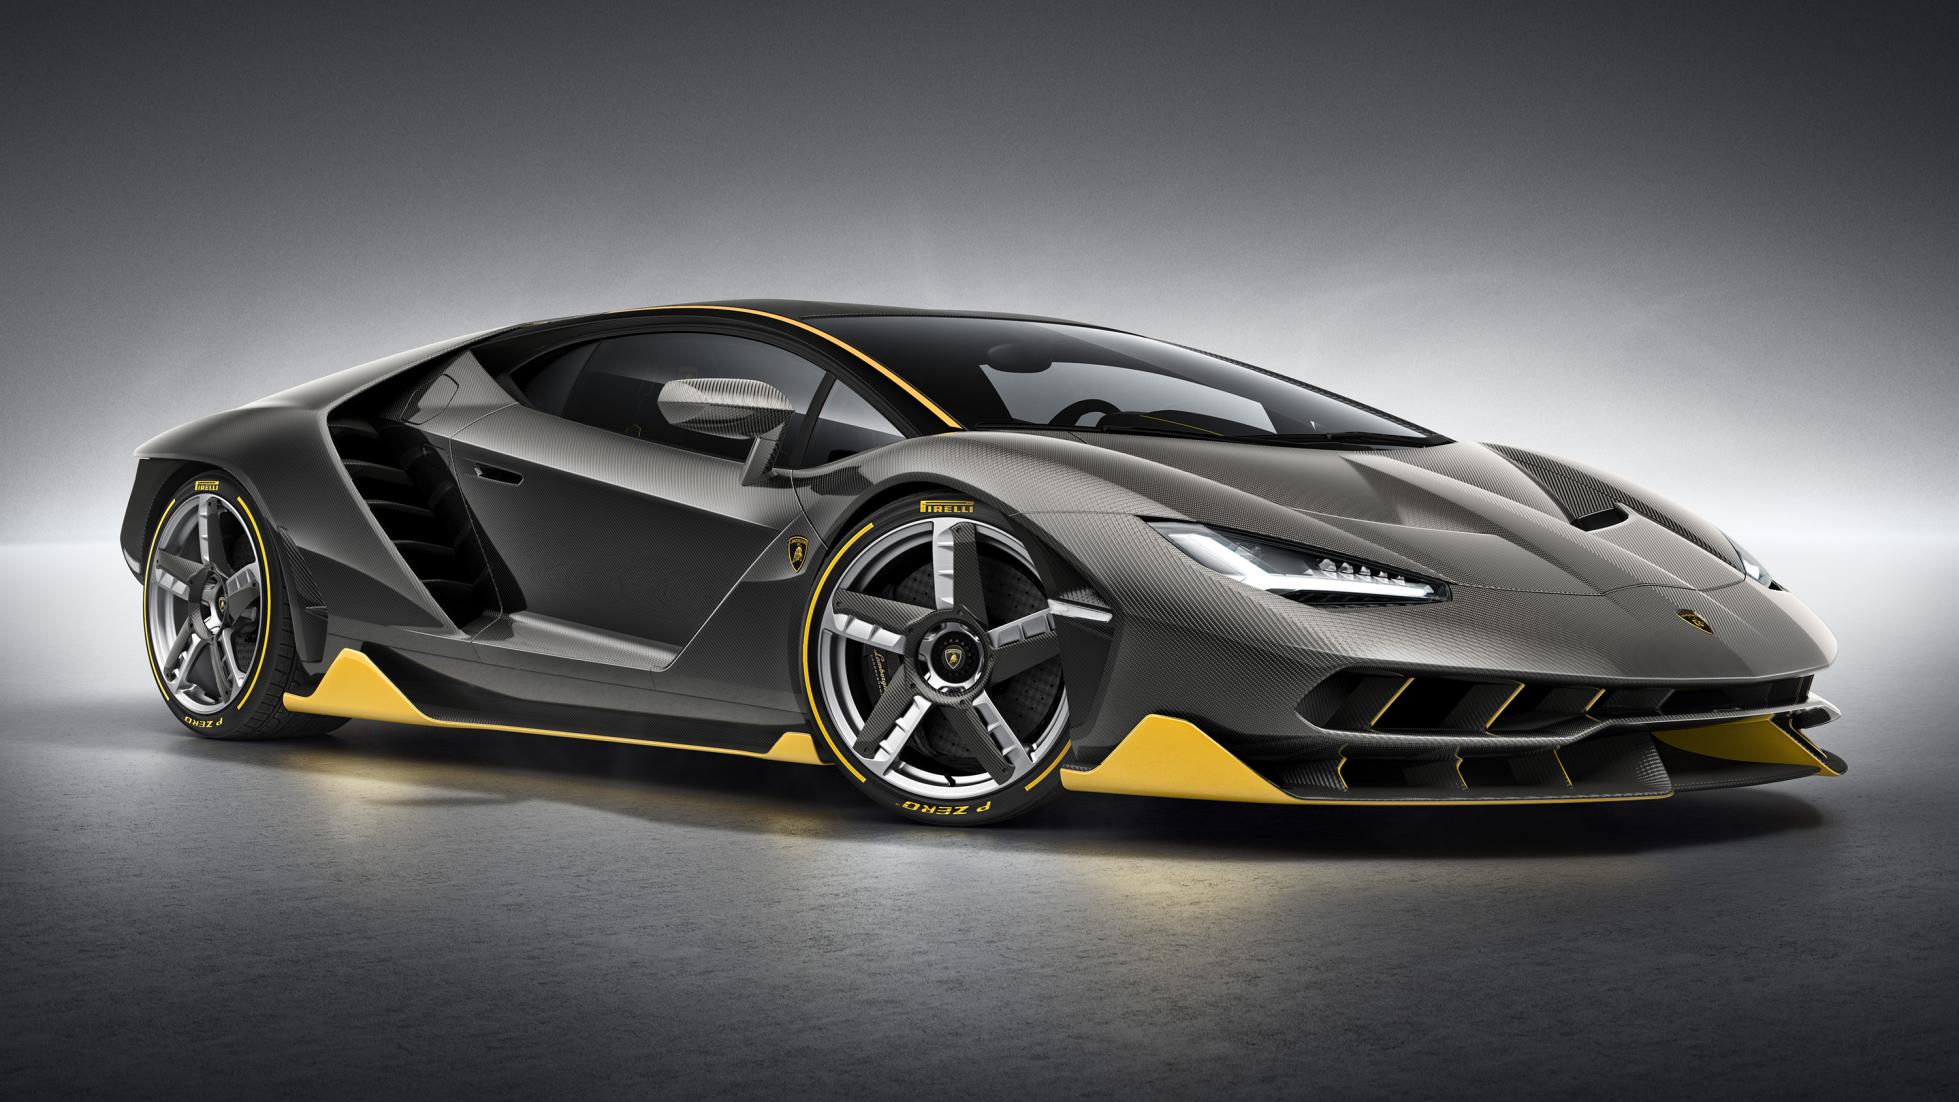 Lamborghini Centenario HD Wallpaper Background Image